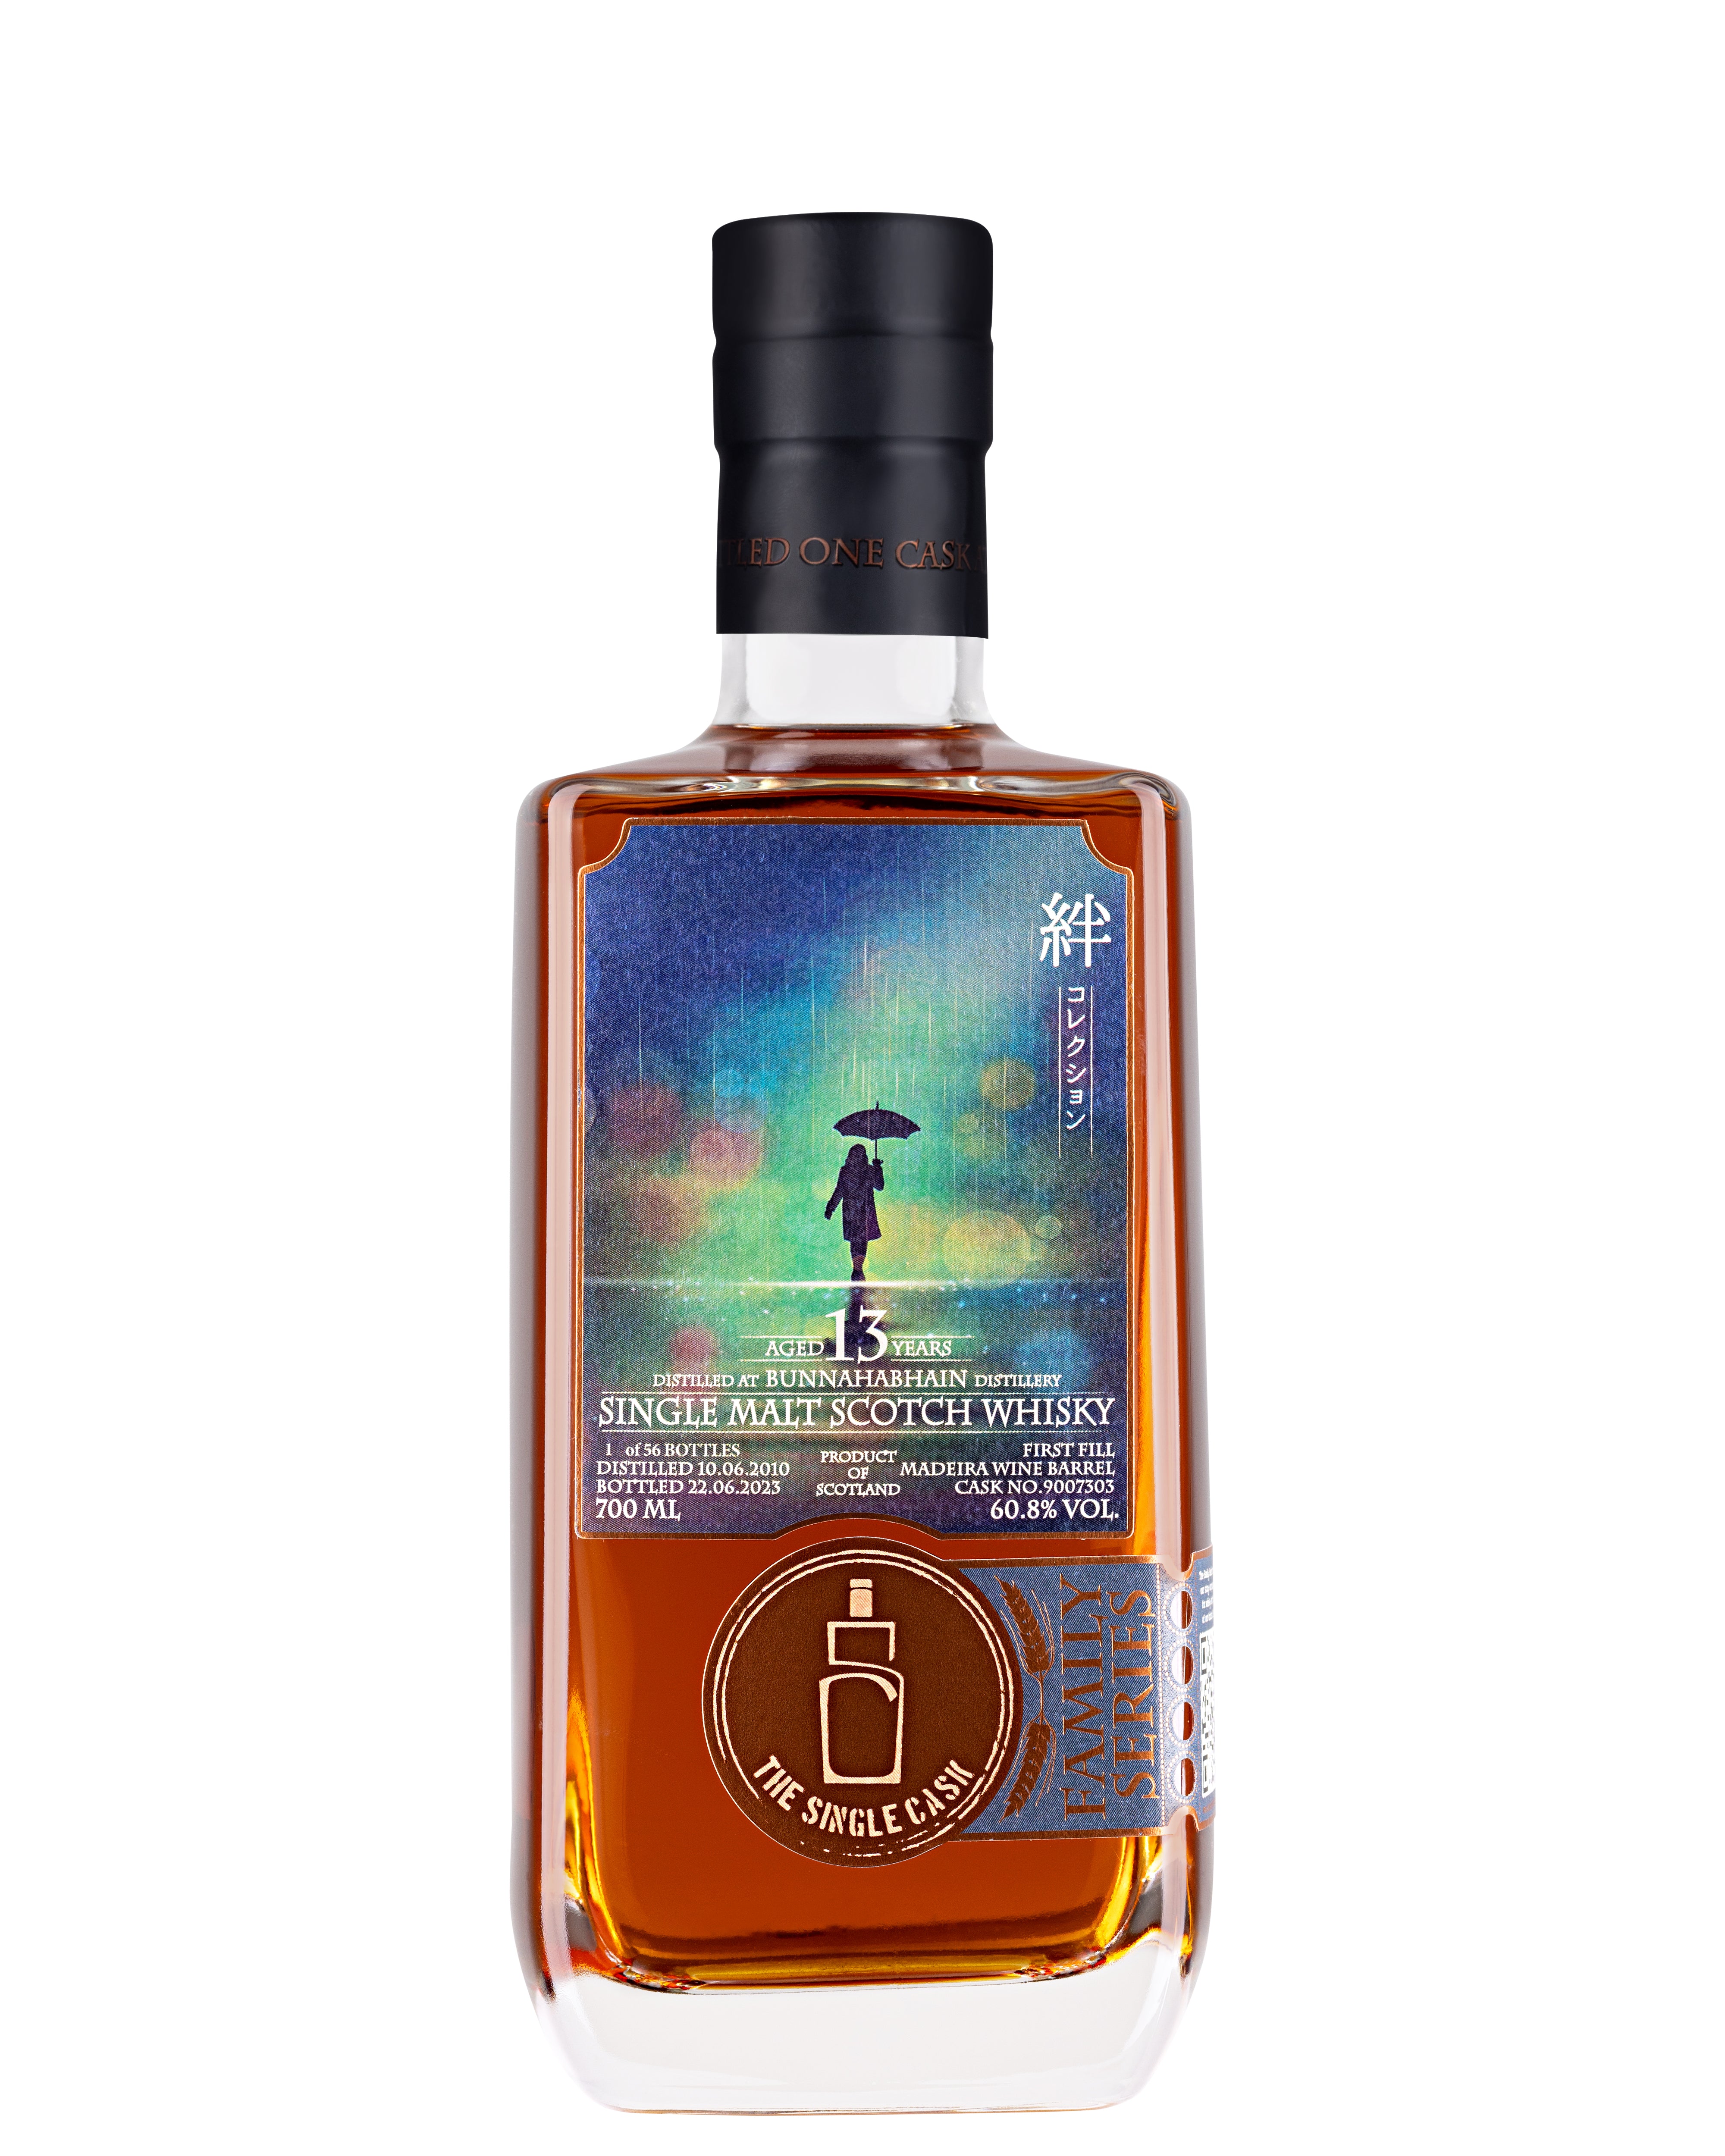 Glen Elgin 10 years old whisky (cask 802860)